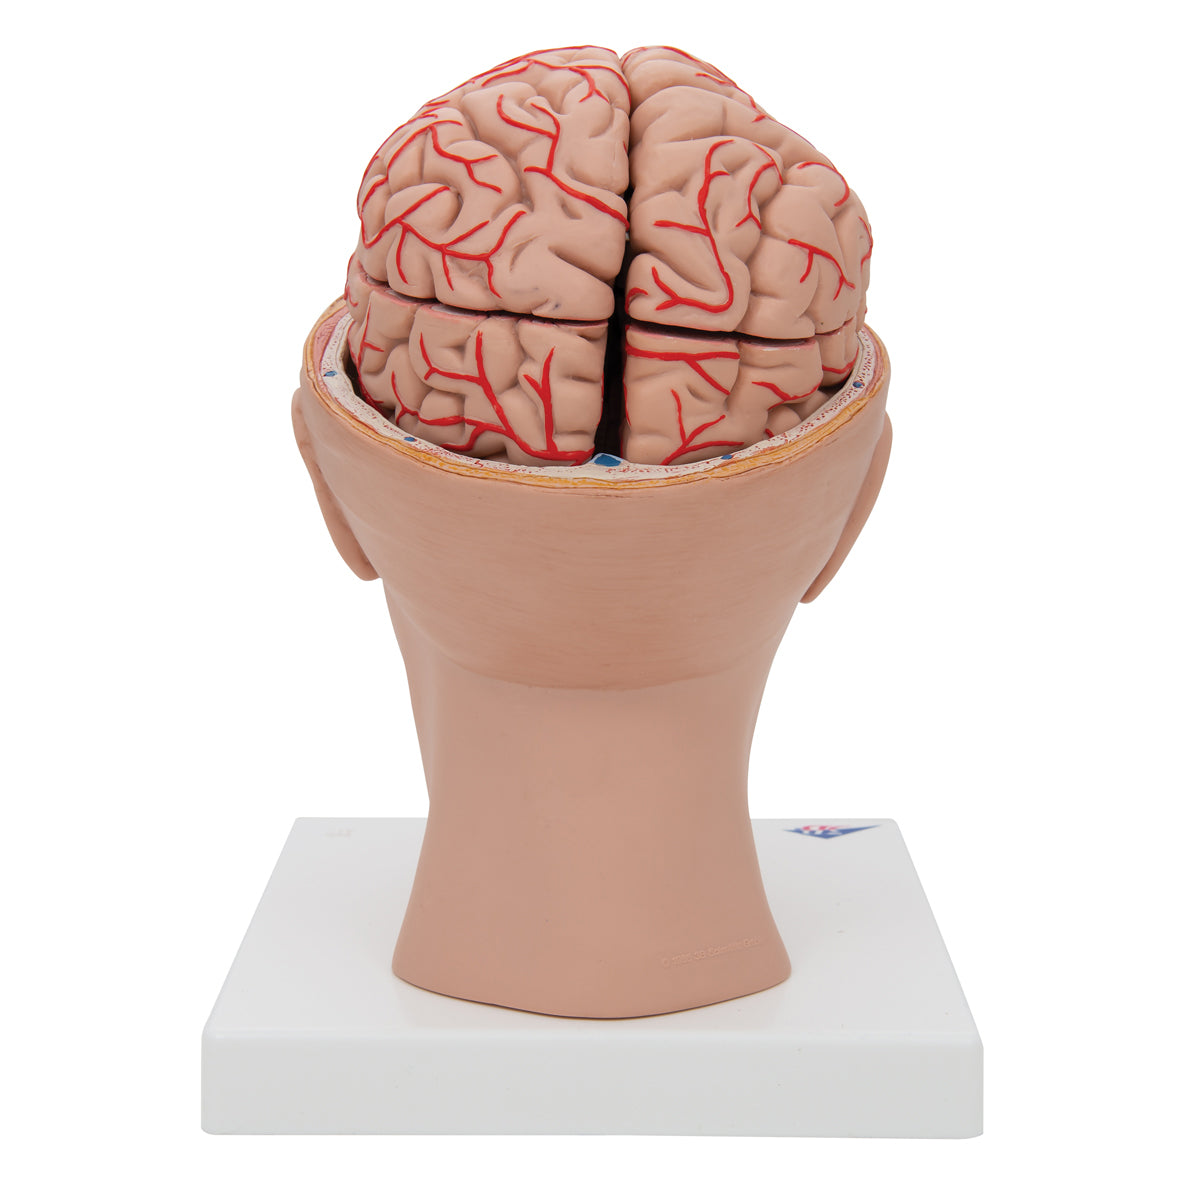 Hjernemodel der viser arterier, vener og den indre kraniebund. Hjernen kan tages ud og deles i 8